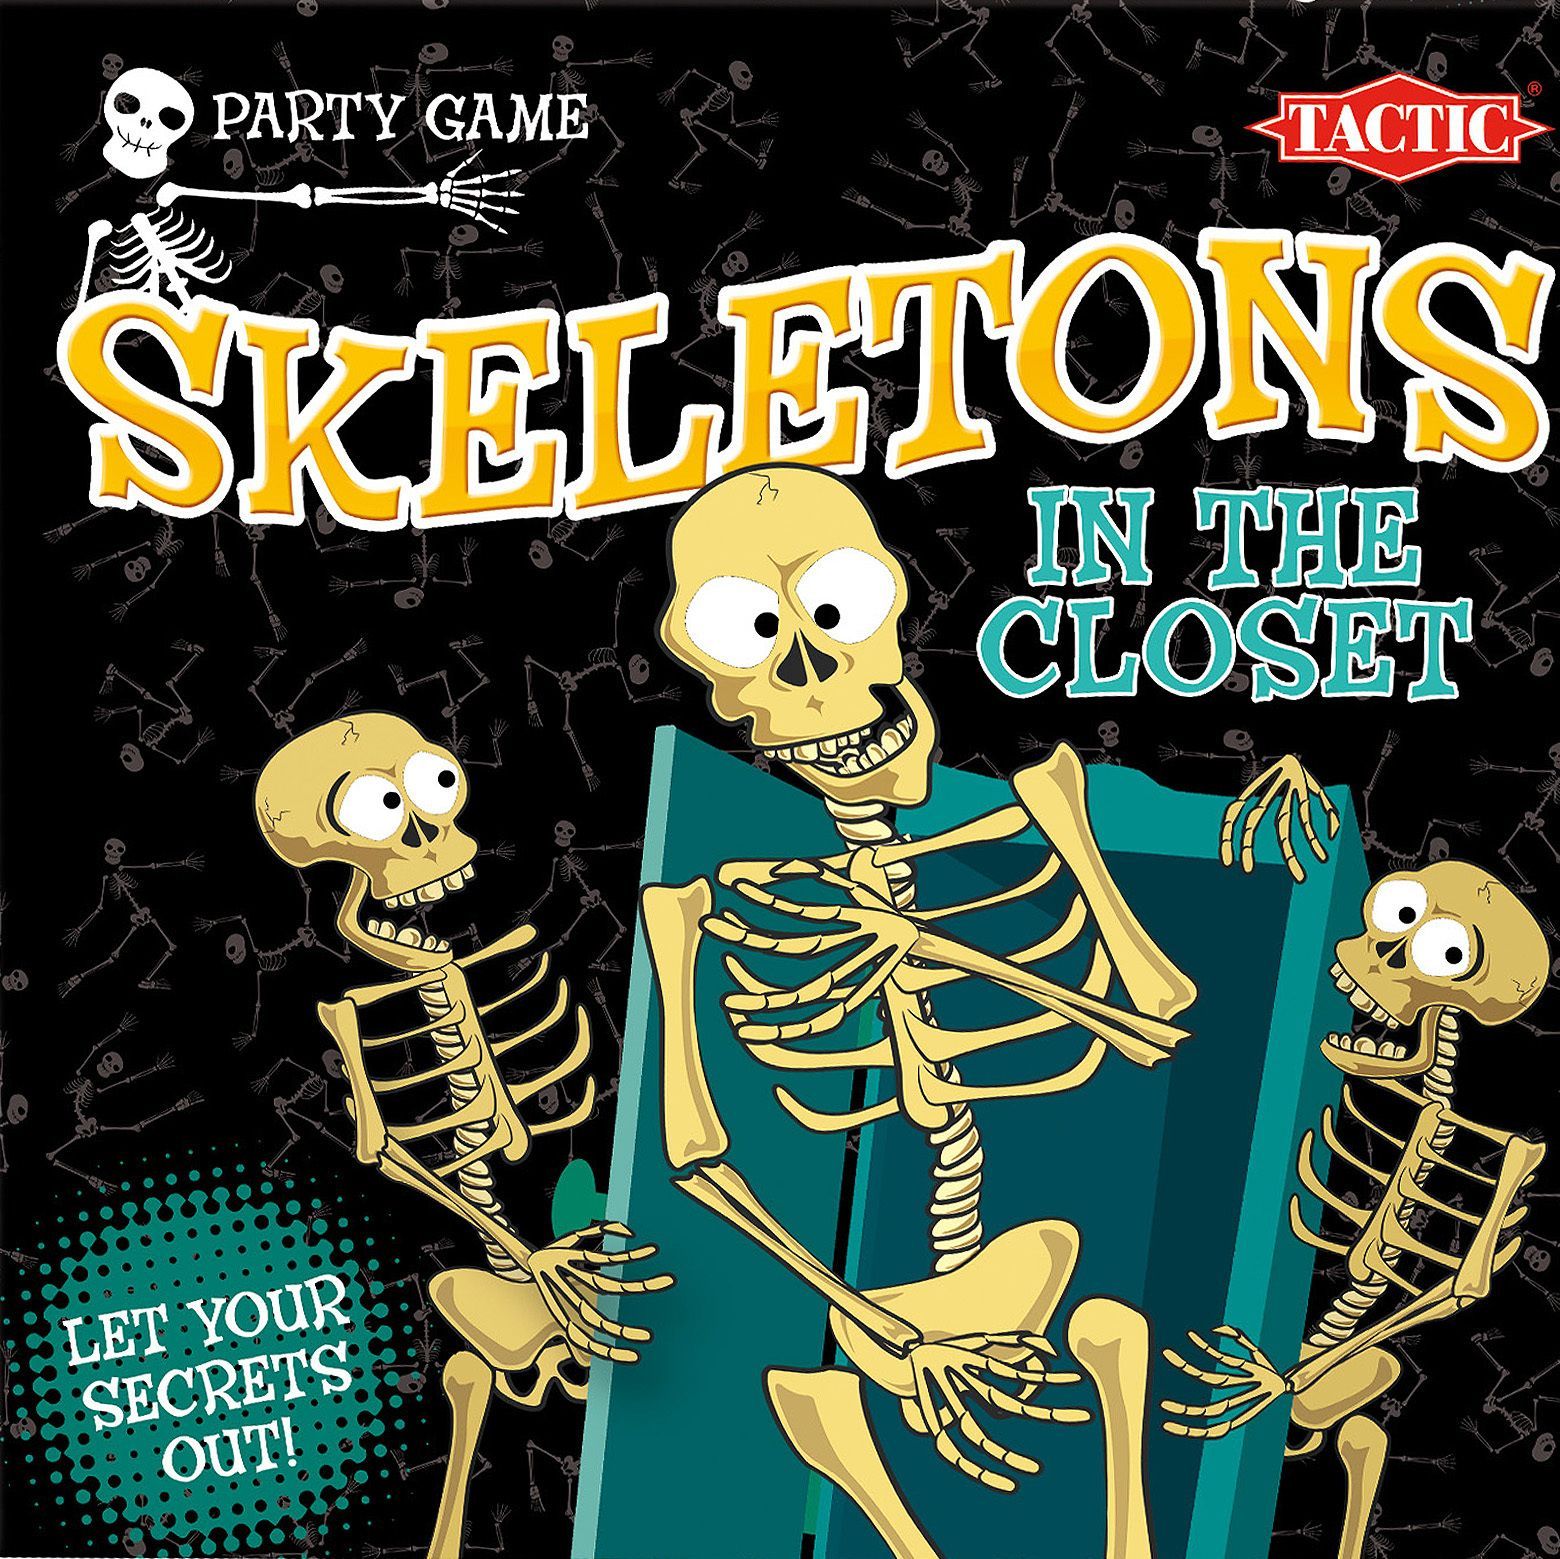 Настольная игра скелет